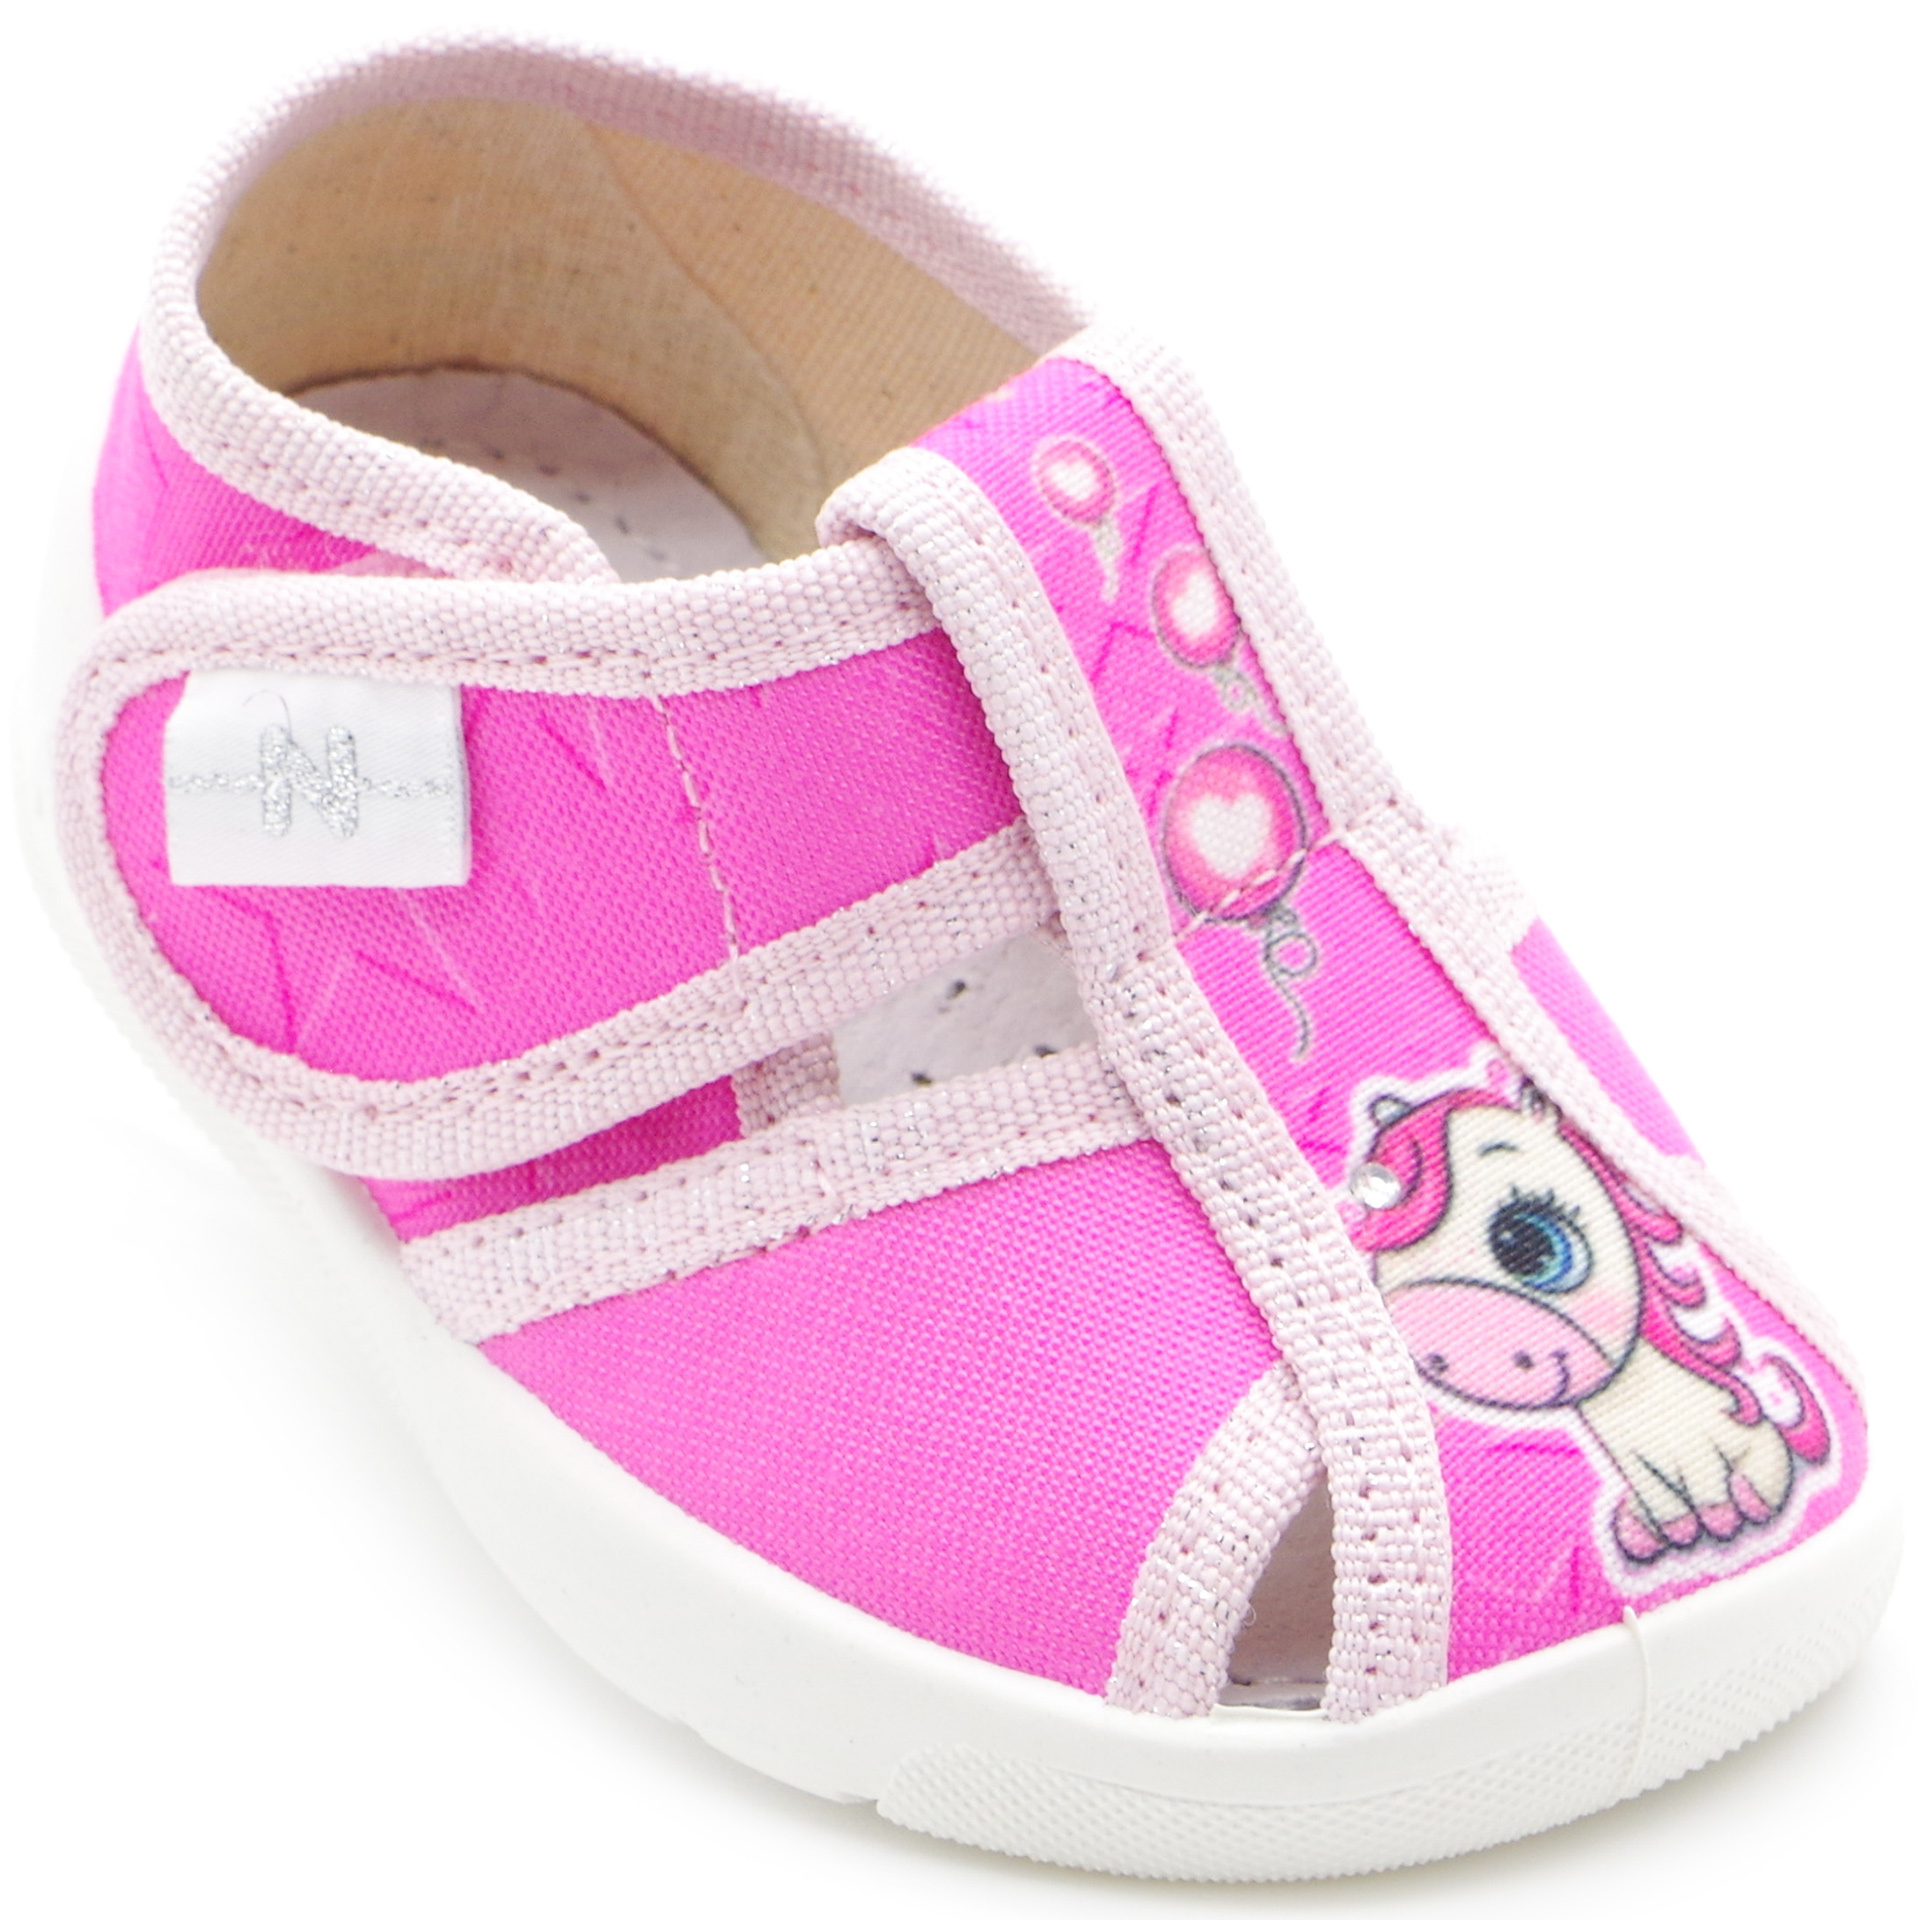 Текстильная обувь для девочек Тапочки Merlin (2295) цвет Розовый 18-25 размеры – Sole Kids